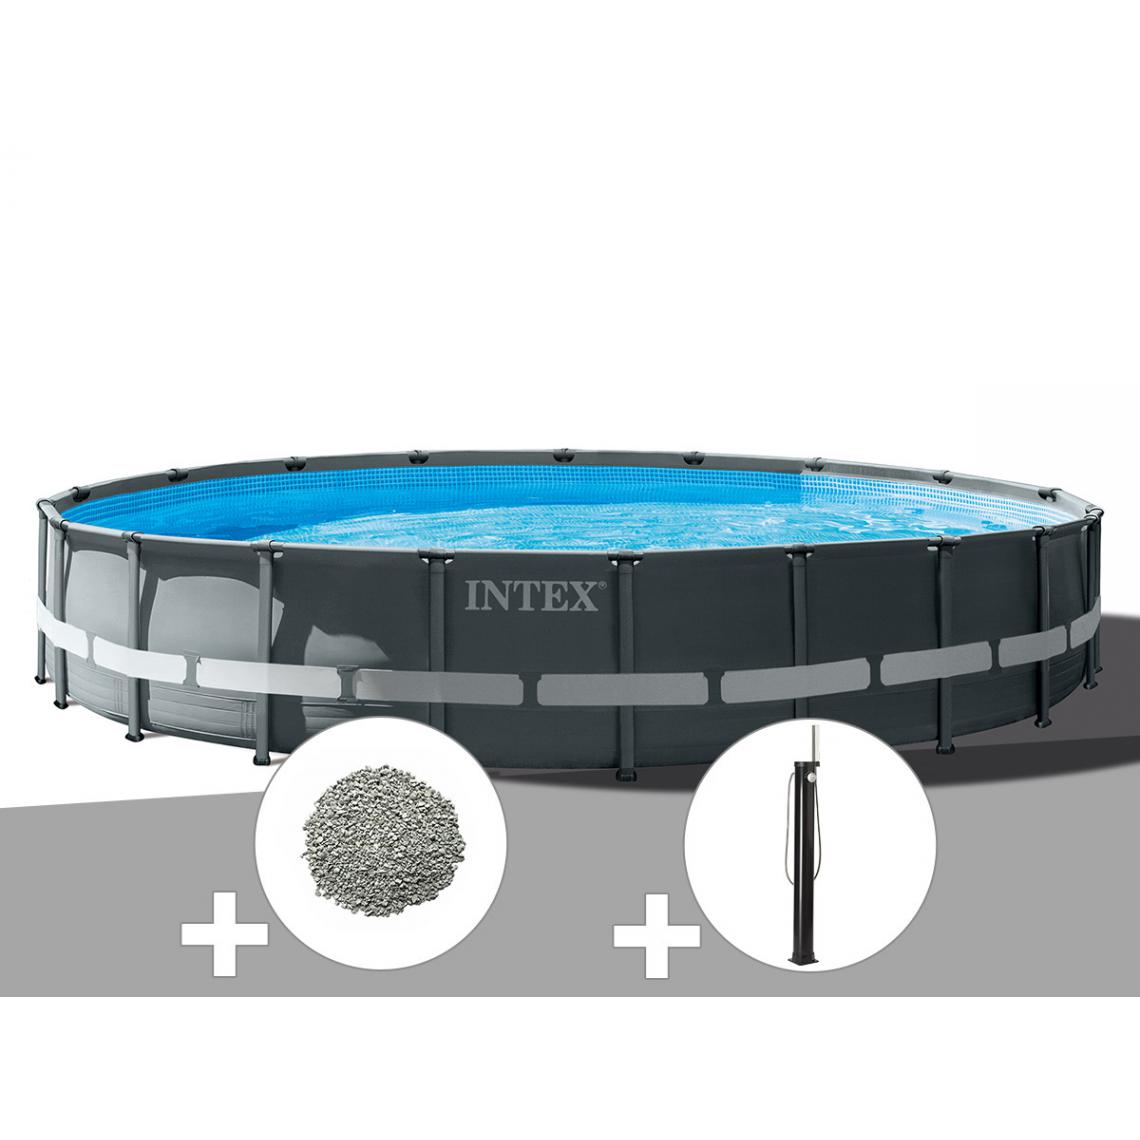 Intex - Kit piscine tubulaire Intex Ultra XTR Frame ronde 6,10 x 1,22 m + 20 kg de zéolite + Douche solaire - Piscine Tubulaire